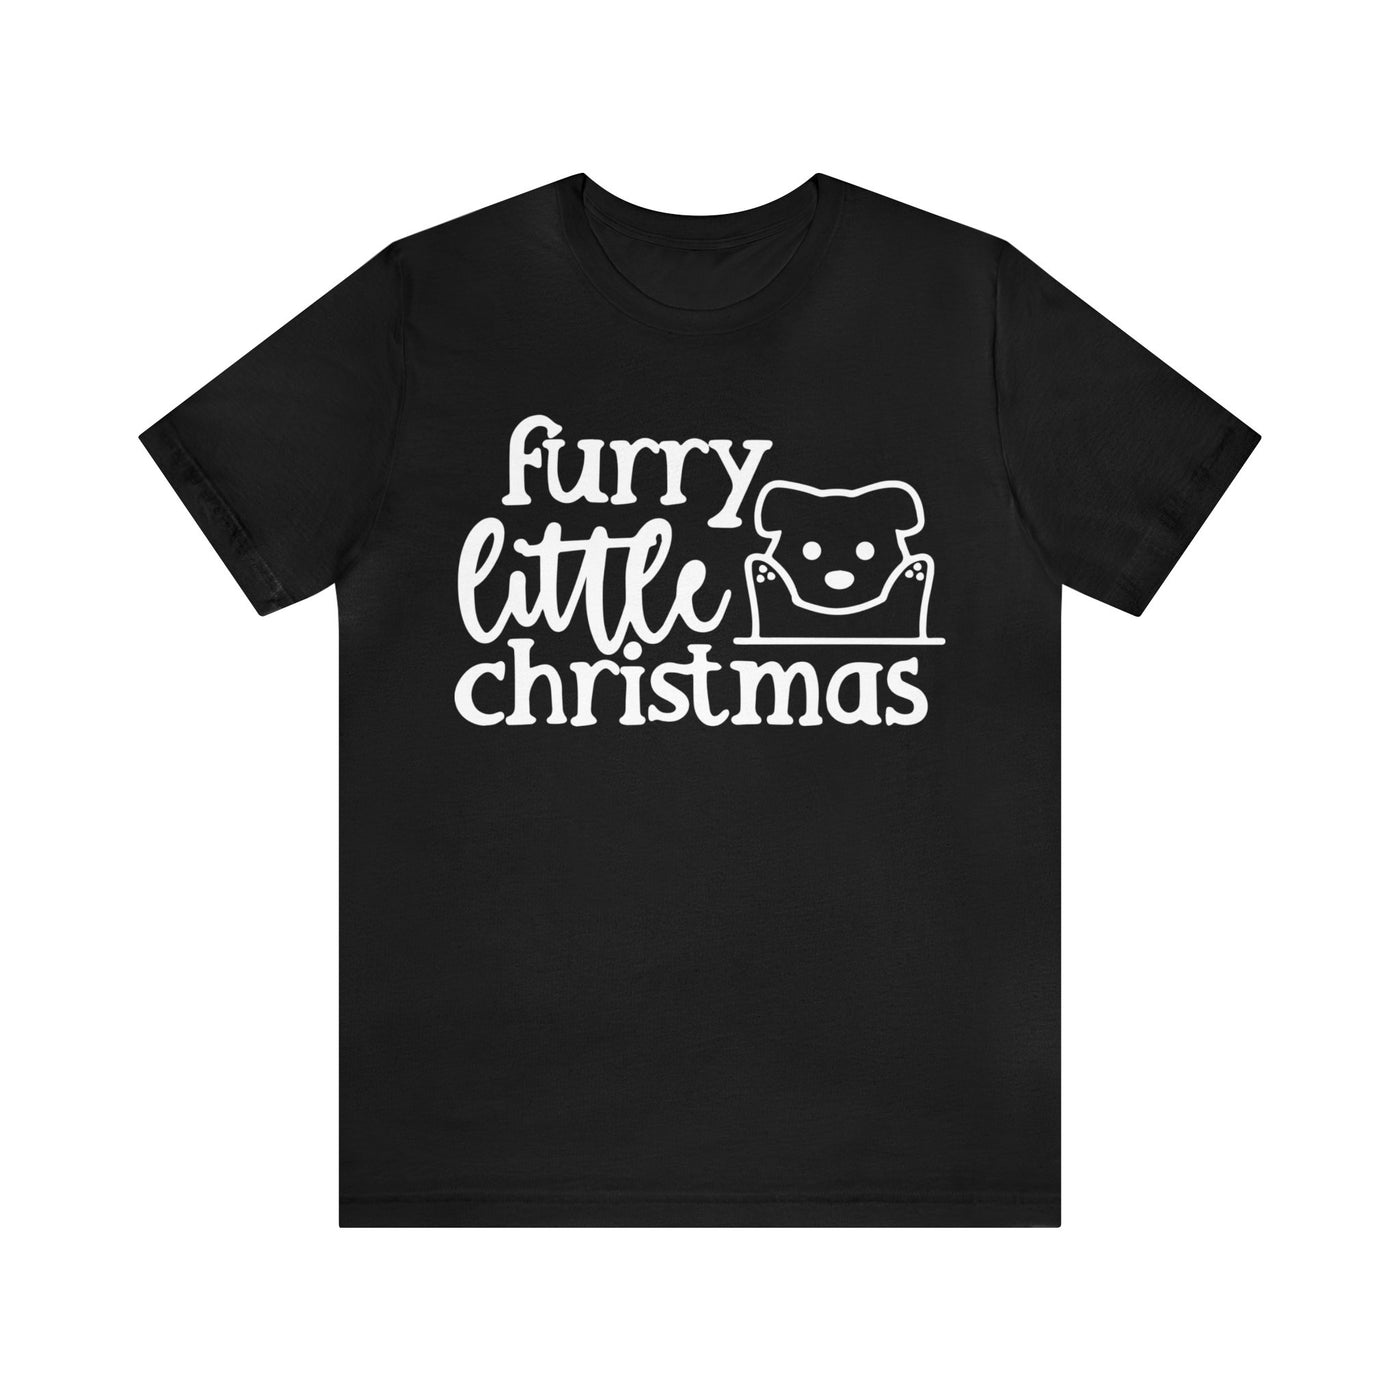 Furry Little Christmas T-Shirt